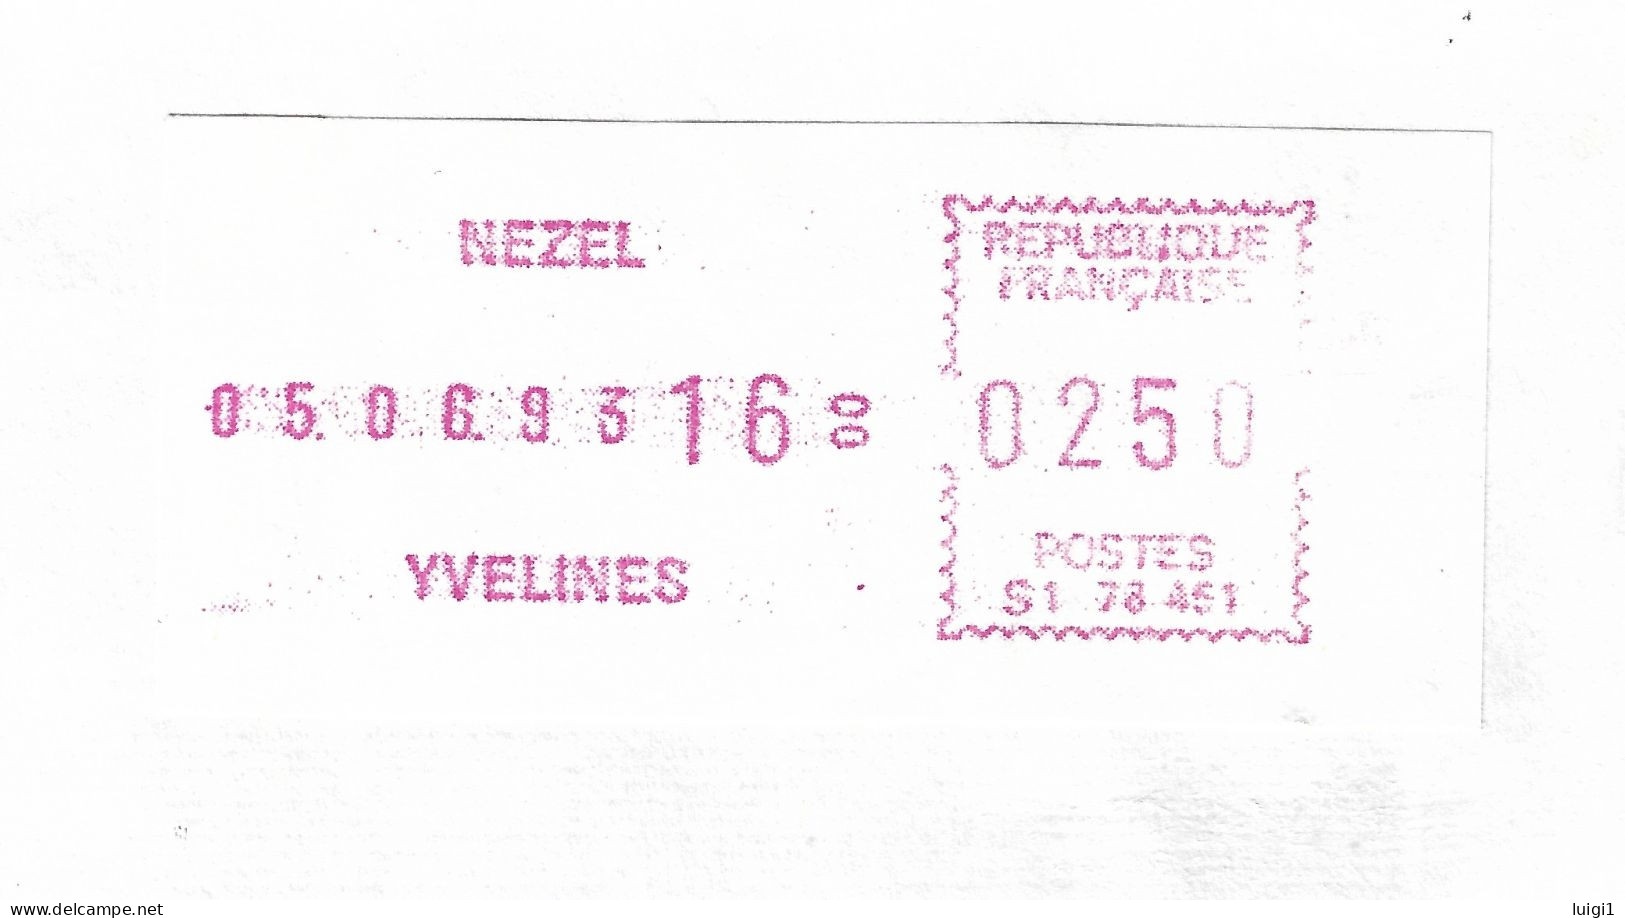 FRANCE 1993.Vignette D'Affranchissement De Guichet - SATAS Frama - 2,50 F. Bureau De NEZEL -YVELINES. TB. - 1969 Montgeron – Papier Blanc – Frama/Satas